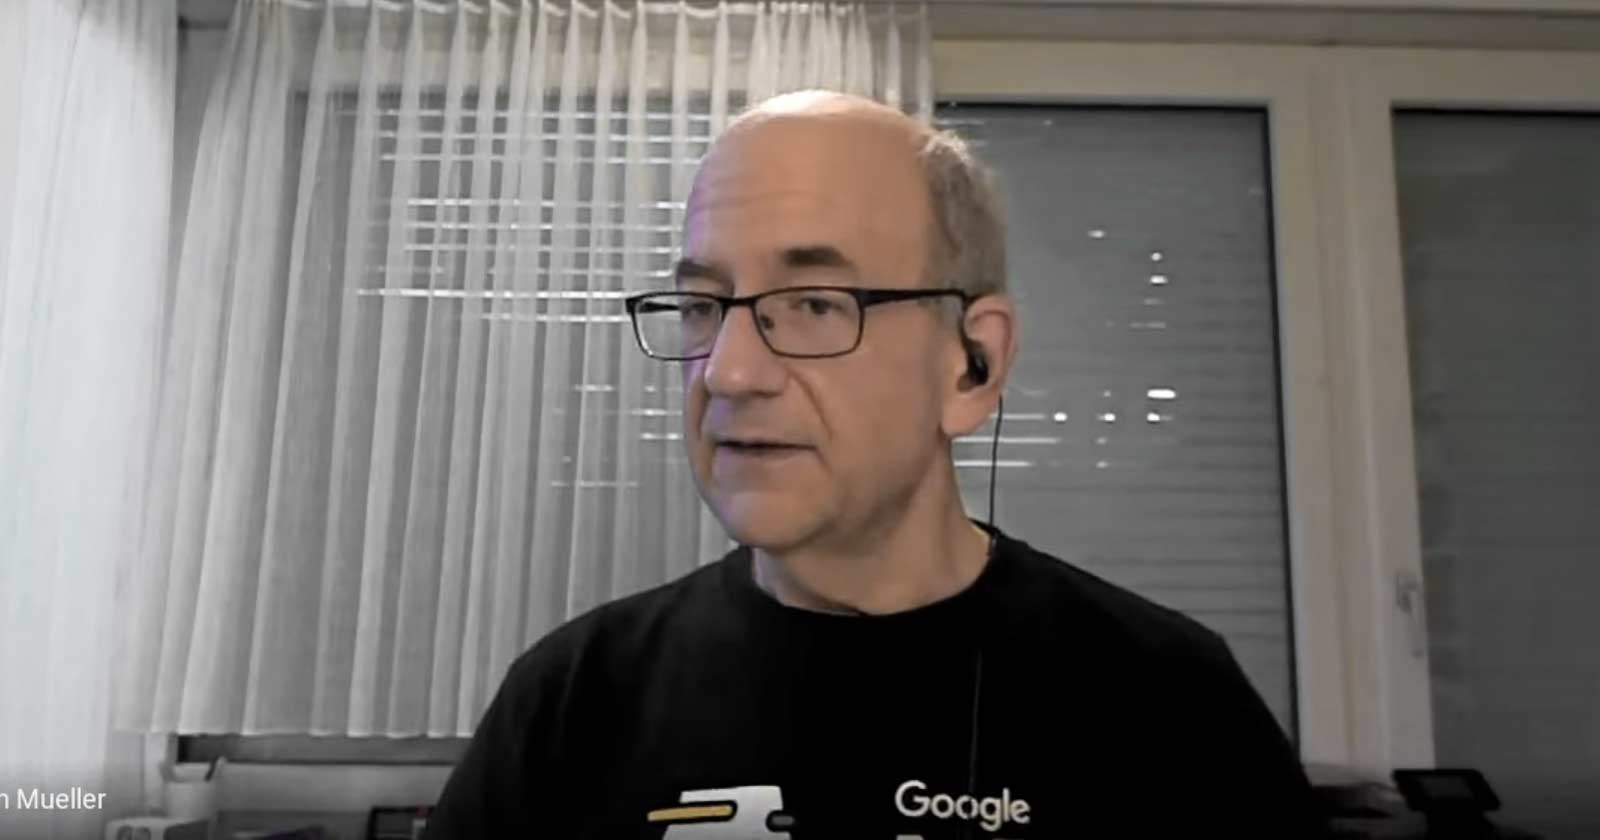 Google's John Mueller